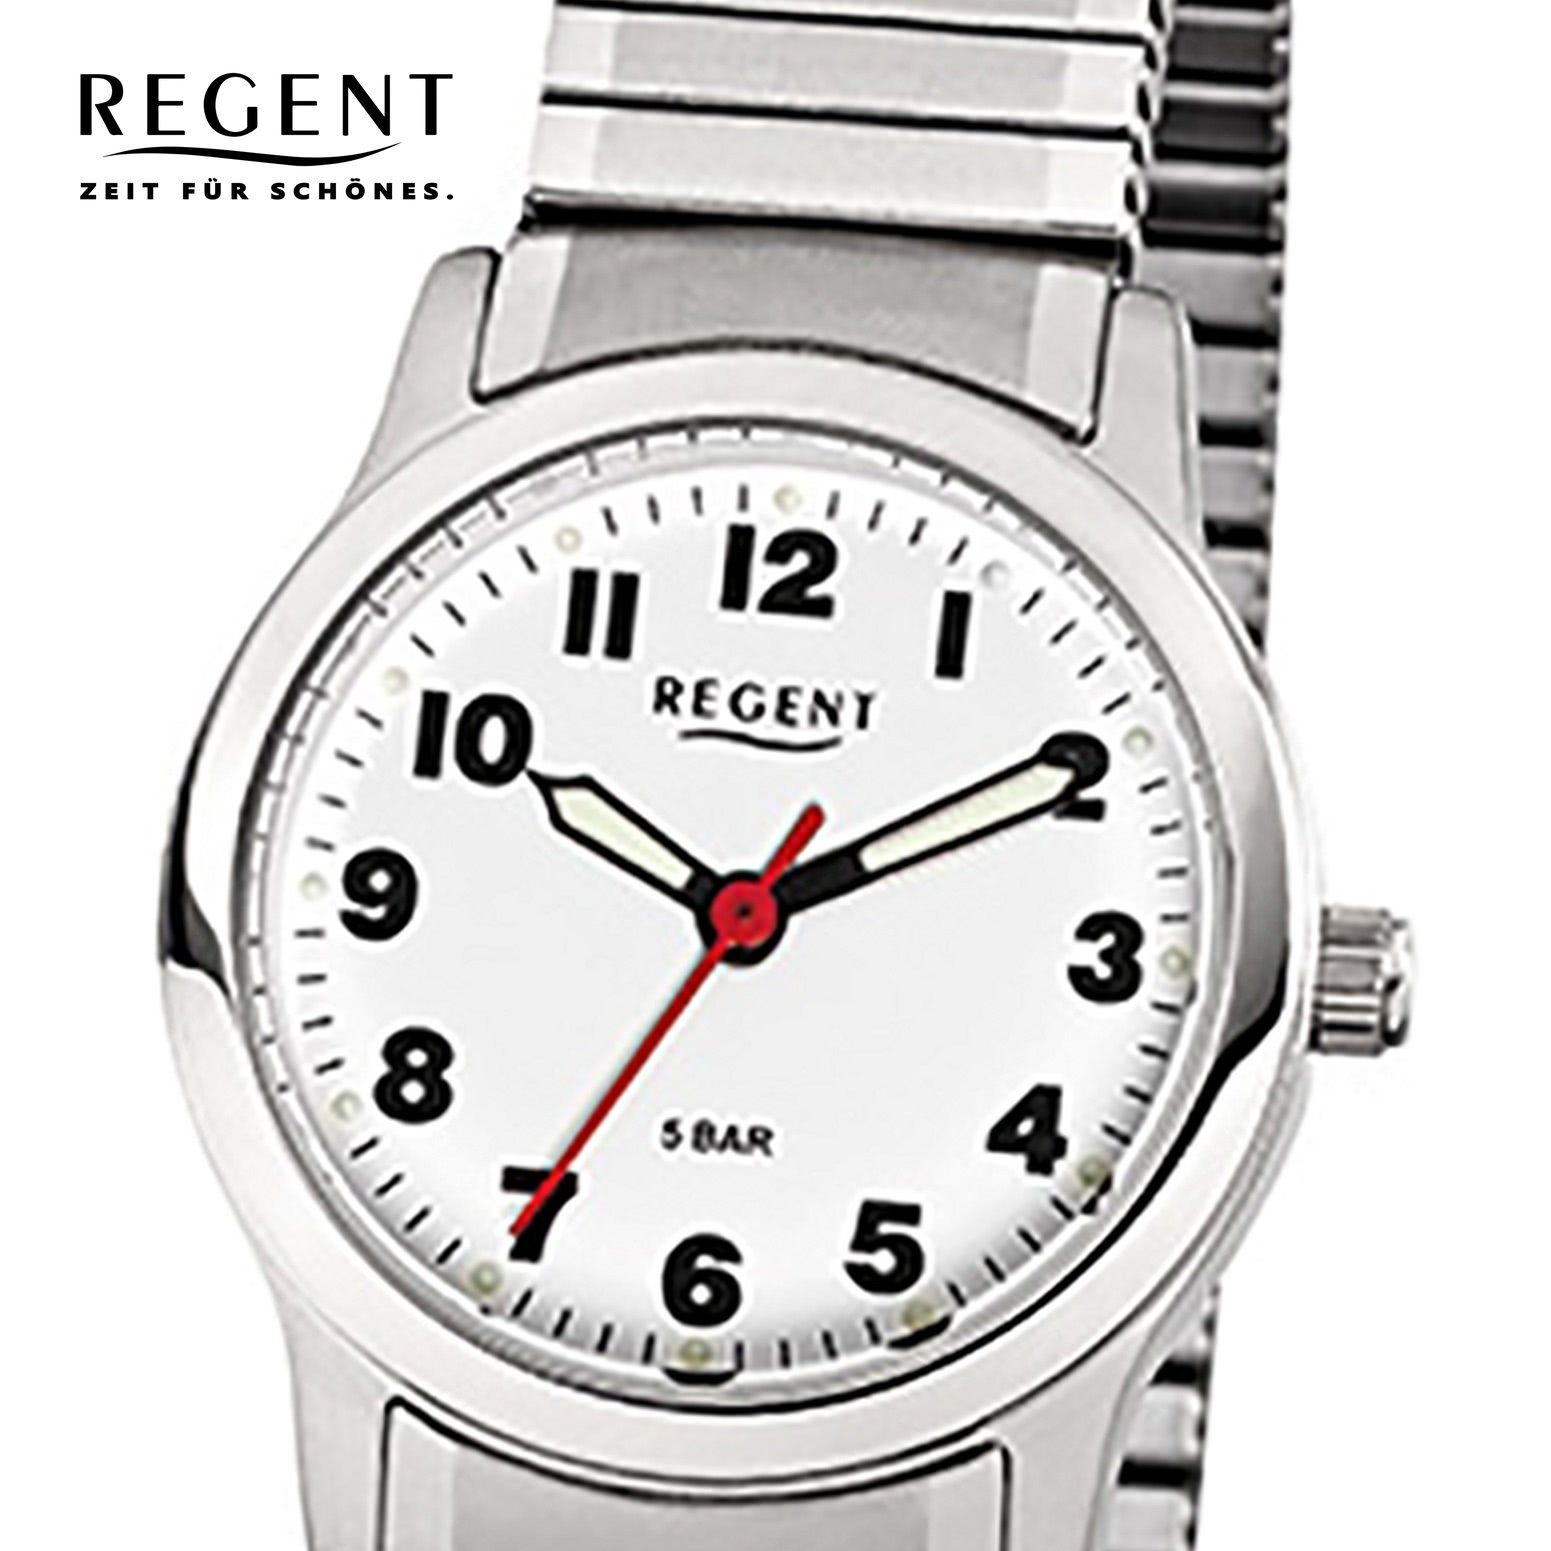 (ca. 28mm), Armbanduhr Damen Regent klein Analog F-898, silber Damen-Armbanduhr Quarzuhr Edelstahlarmband Regent rund,